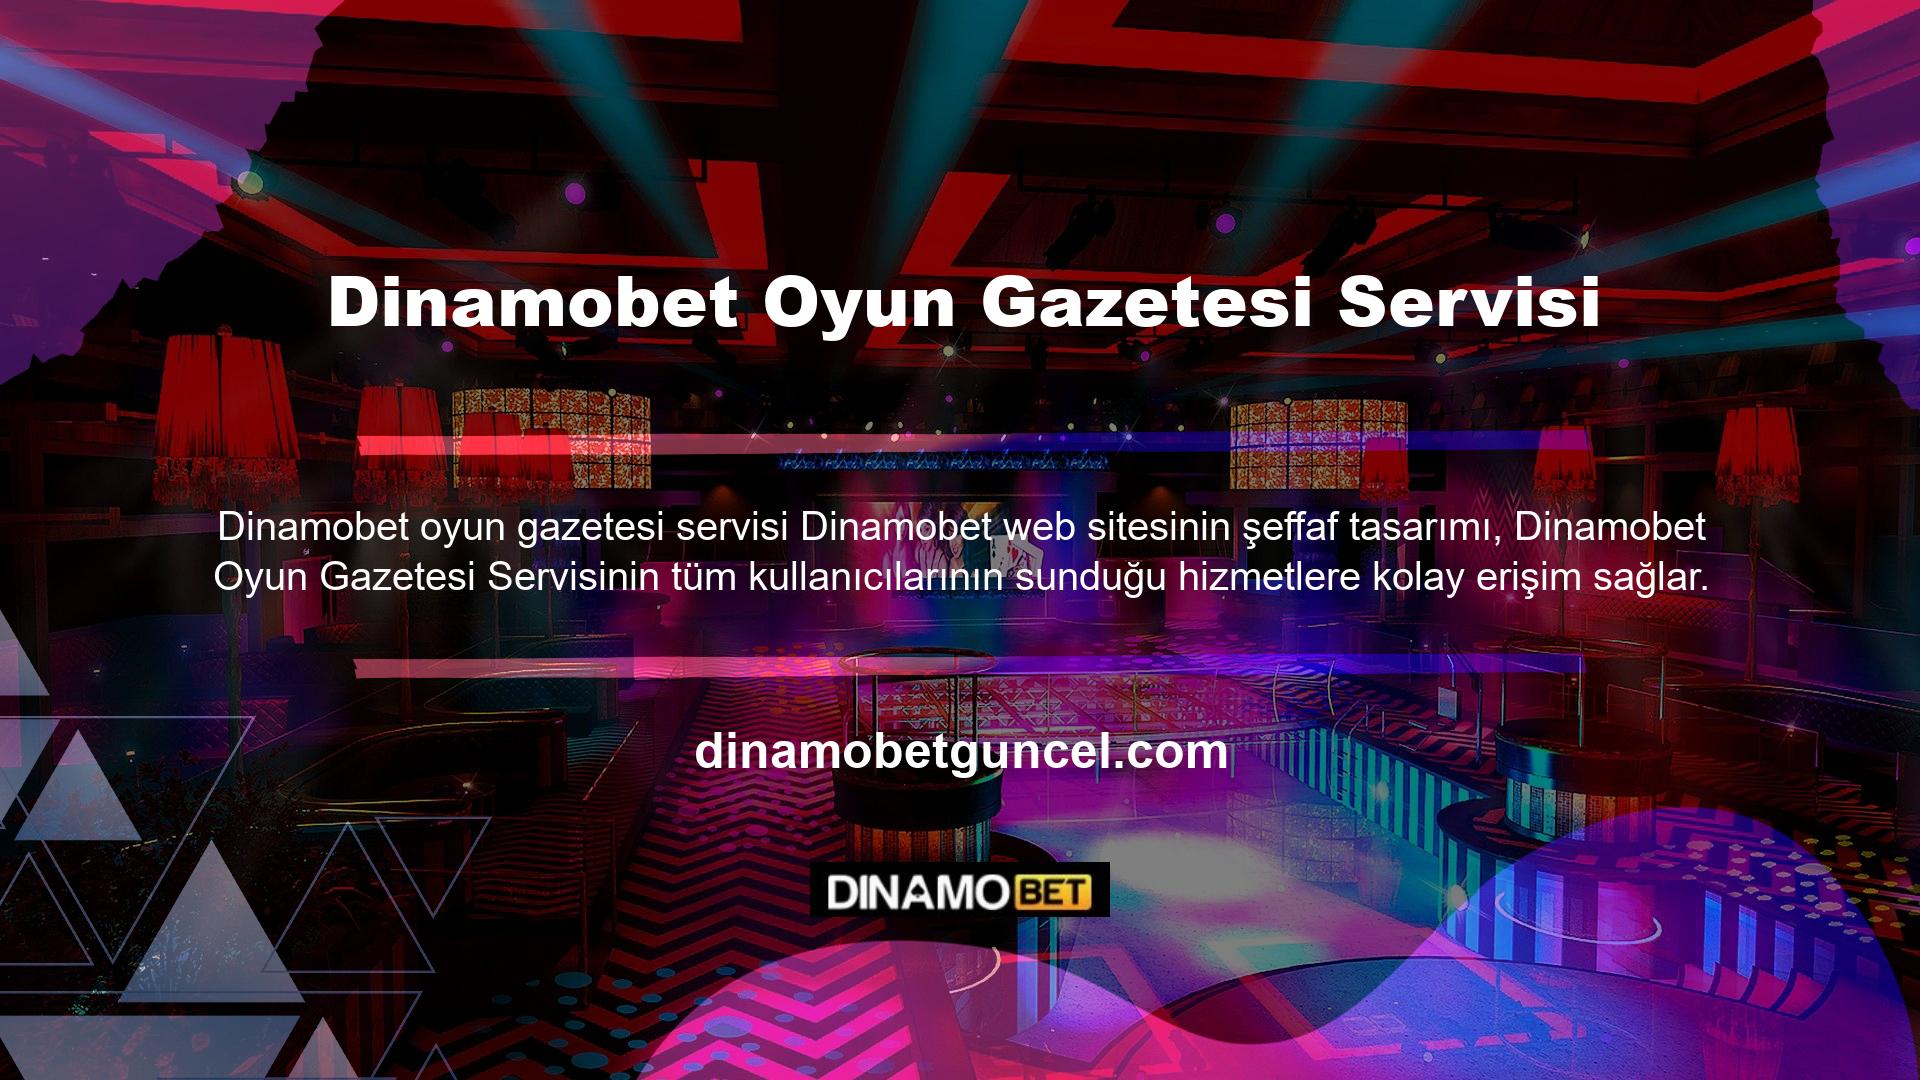 Dinamobet Gazetesi Hizmeti, tüm oyun seçenekleri için önemli bilgilere ve geliştirme bilgilerine hızlı erişim sağlar